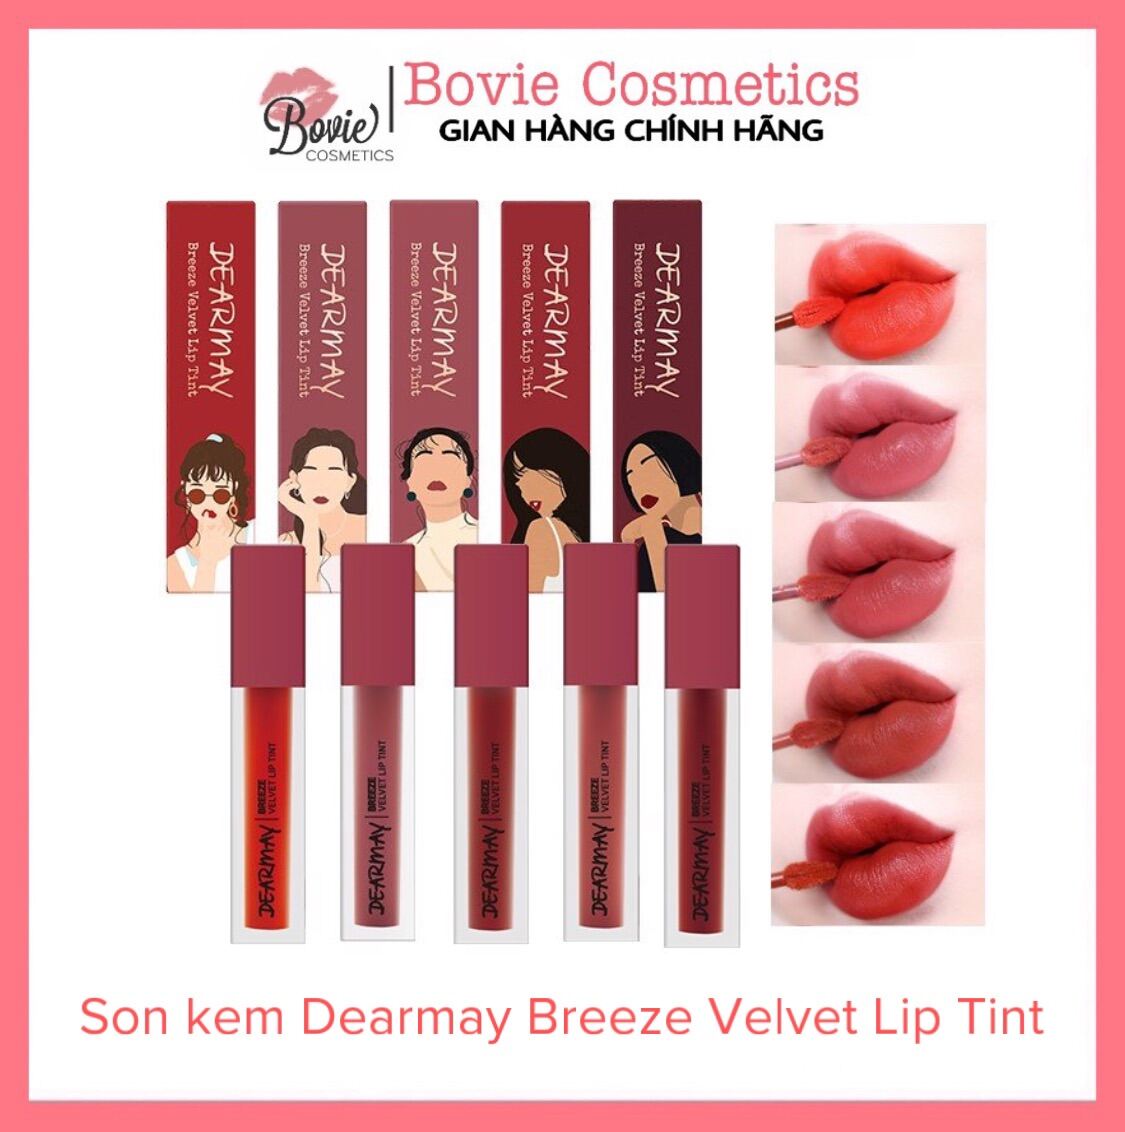 Son kem Dearmay Breeze Velvet Lip Tint màu 1-2-3-4-5